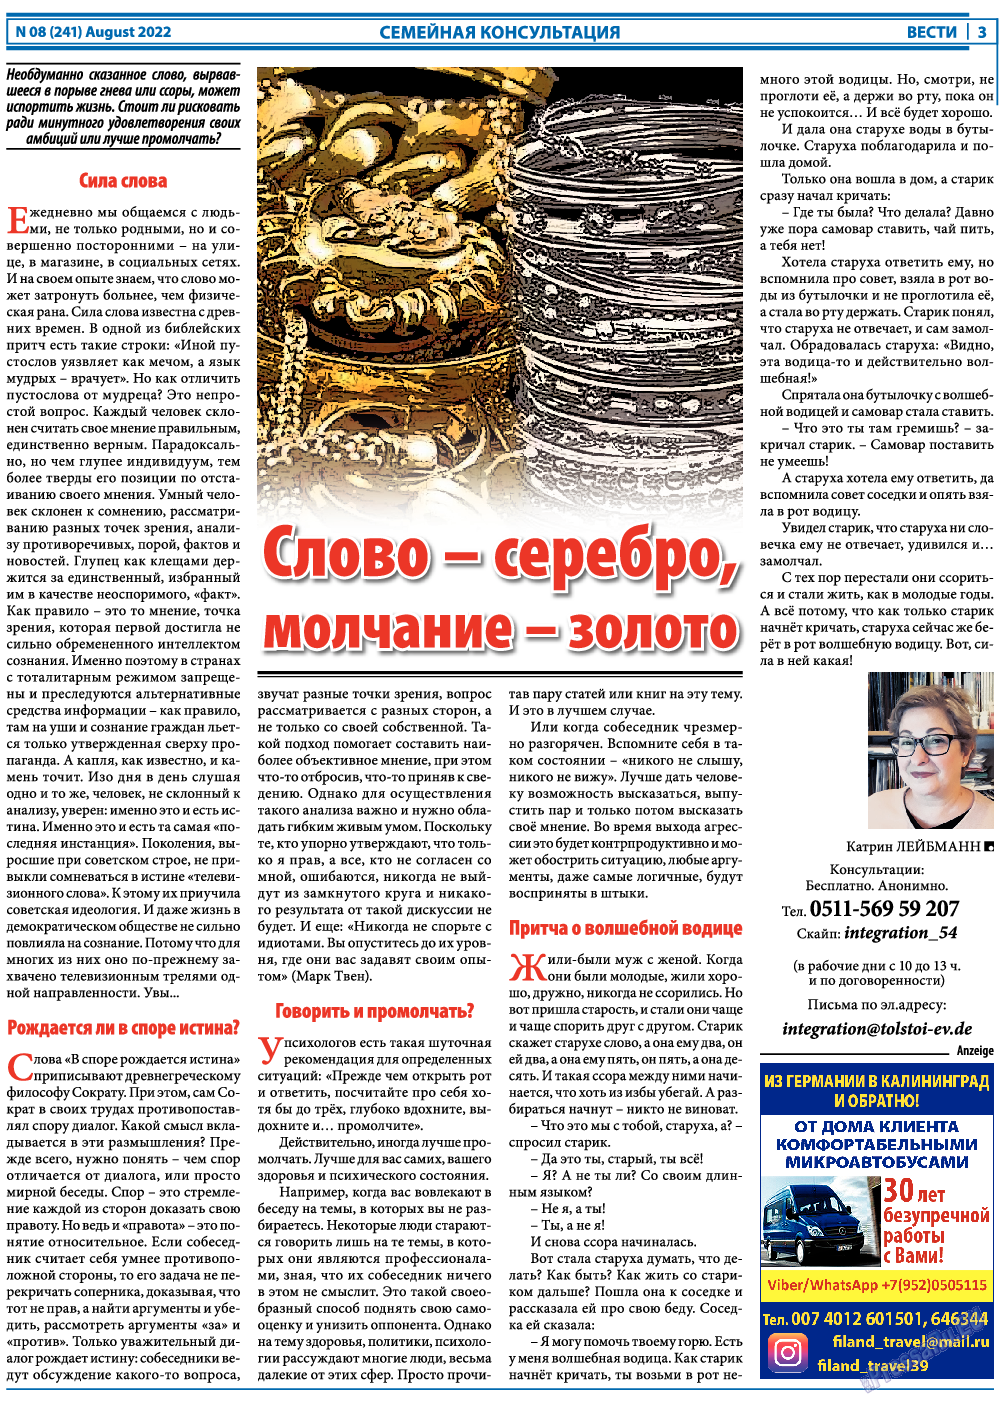 Вести, газета. 2022 №8 стр.3